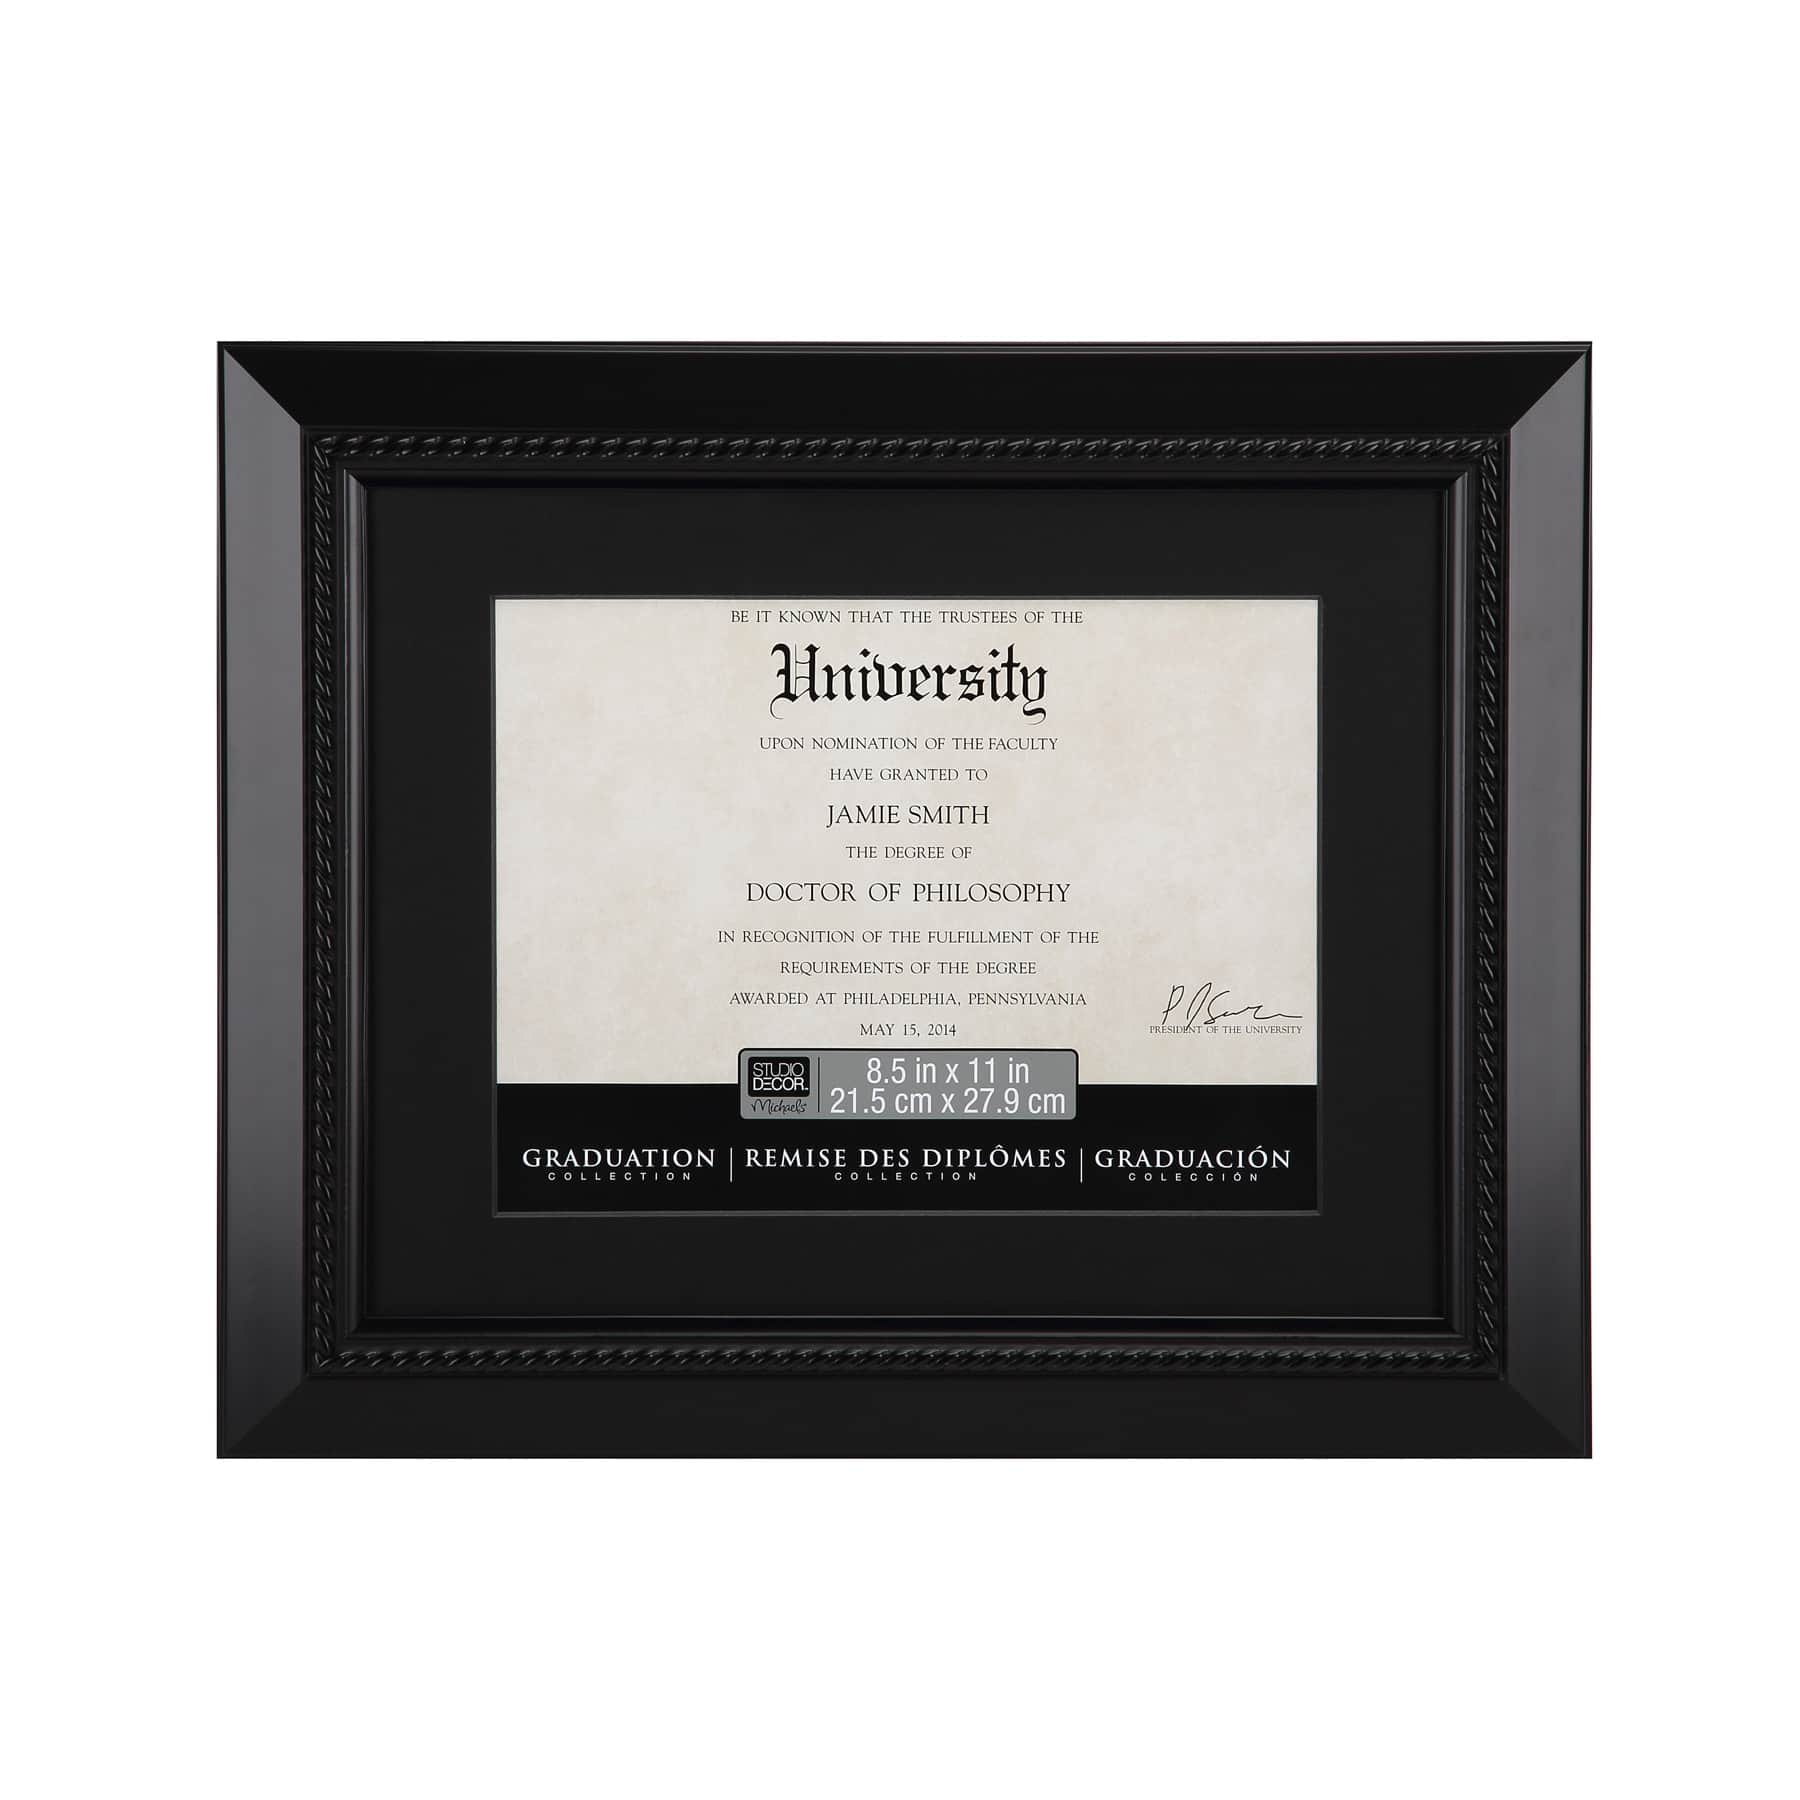 Full Color Black Certificate Holder (Holds 8.5 x 11